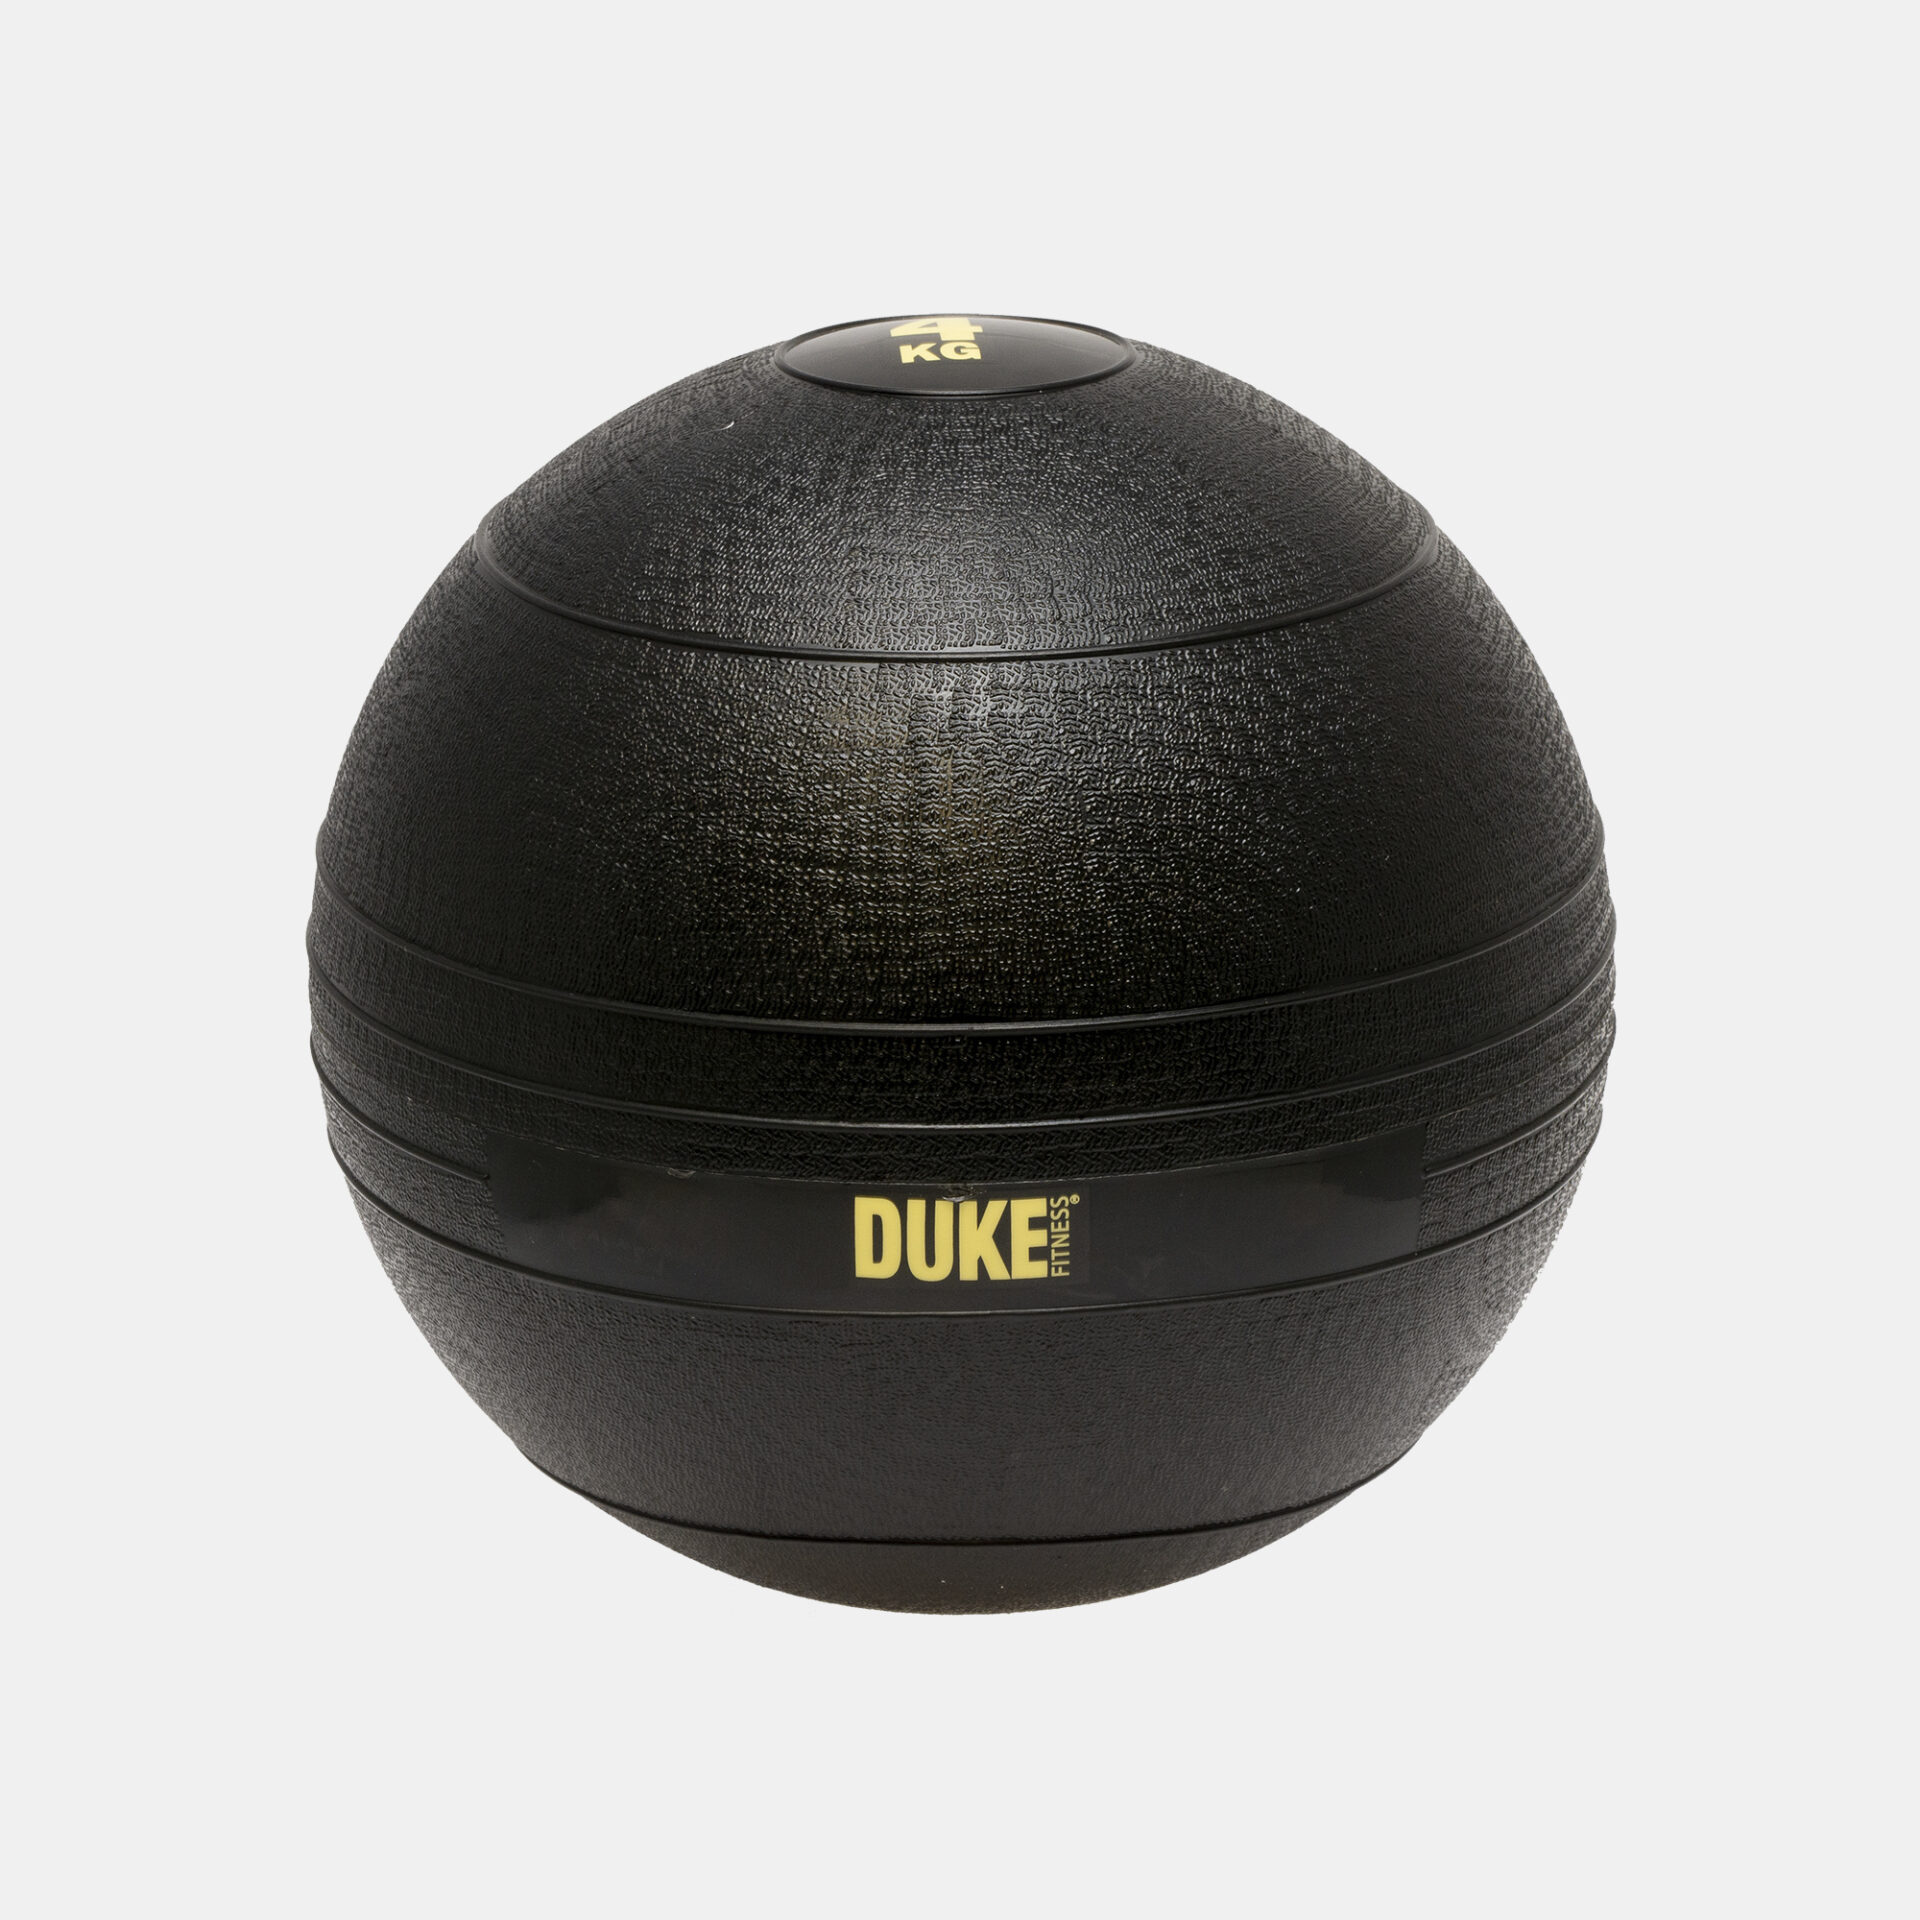 Duke Fitness® kuntopallo tehokkaaseen liikuntaan ja jumppaan.